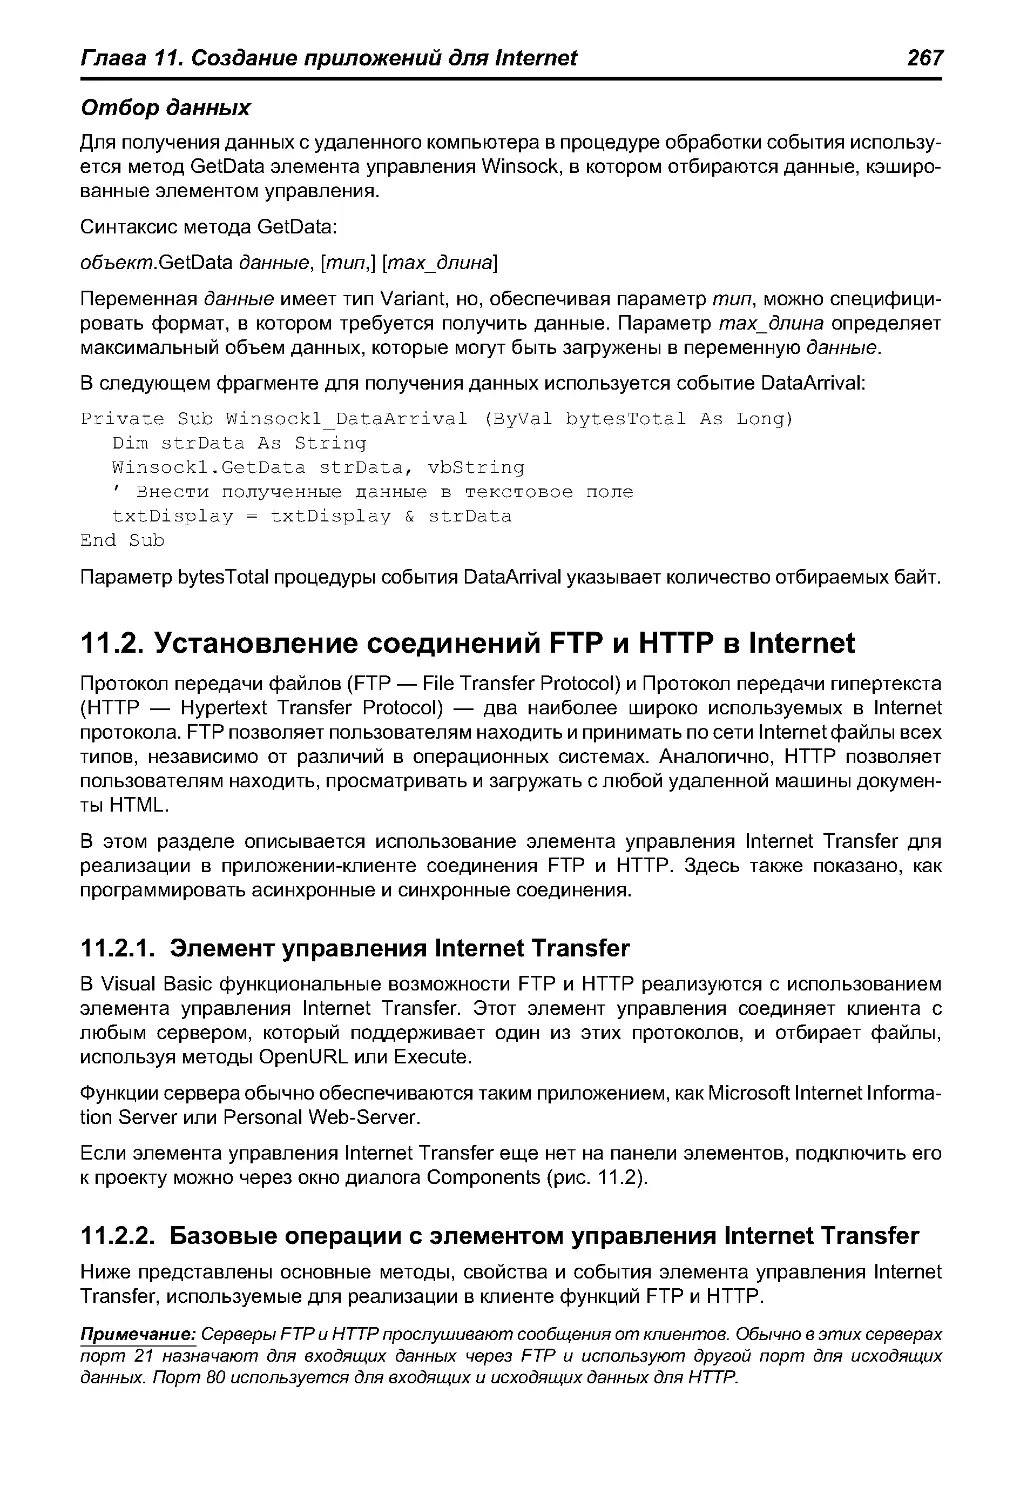 11.2. Установление соединений FTP и HTTP в Internet
11.2.2. Базовые операции с элементом управления Internet Transfer